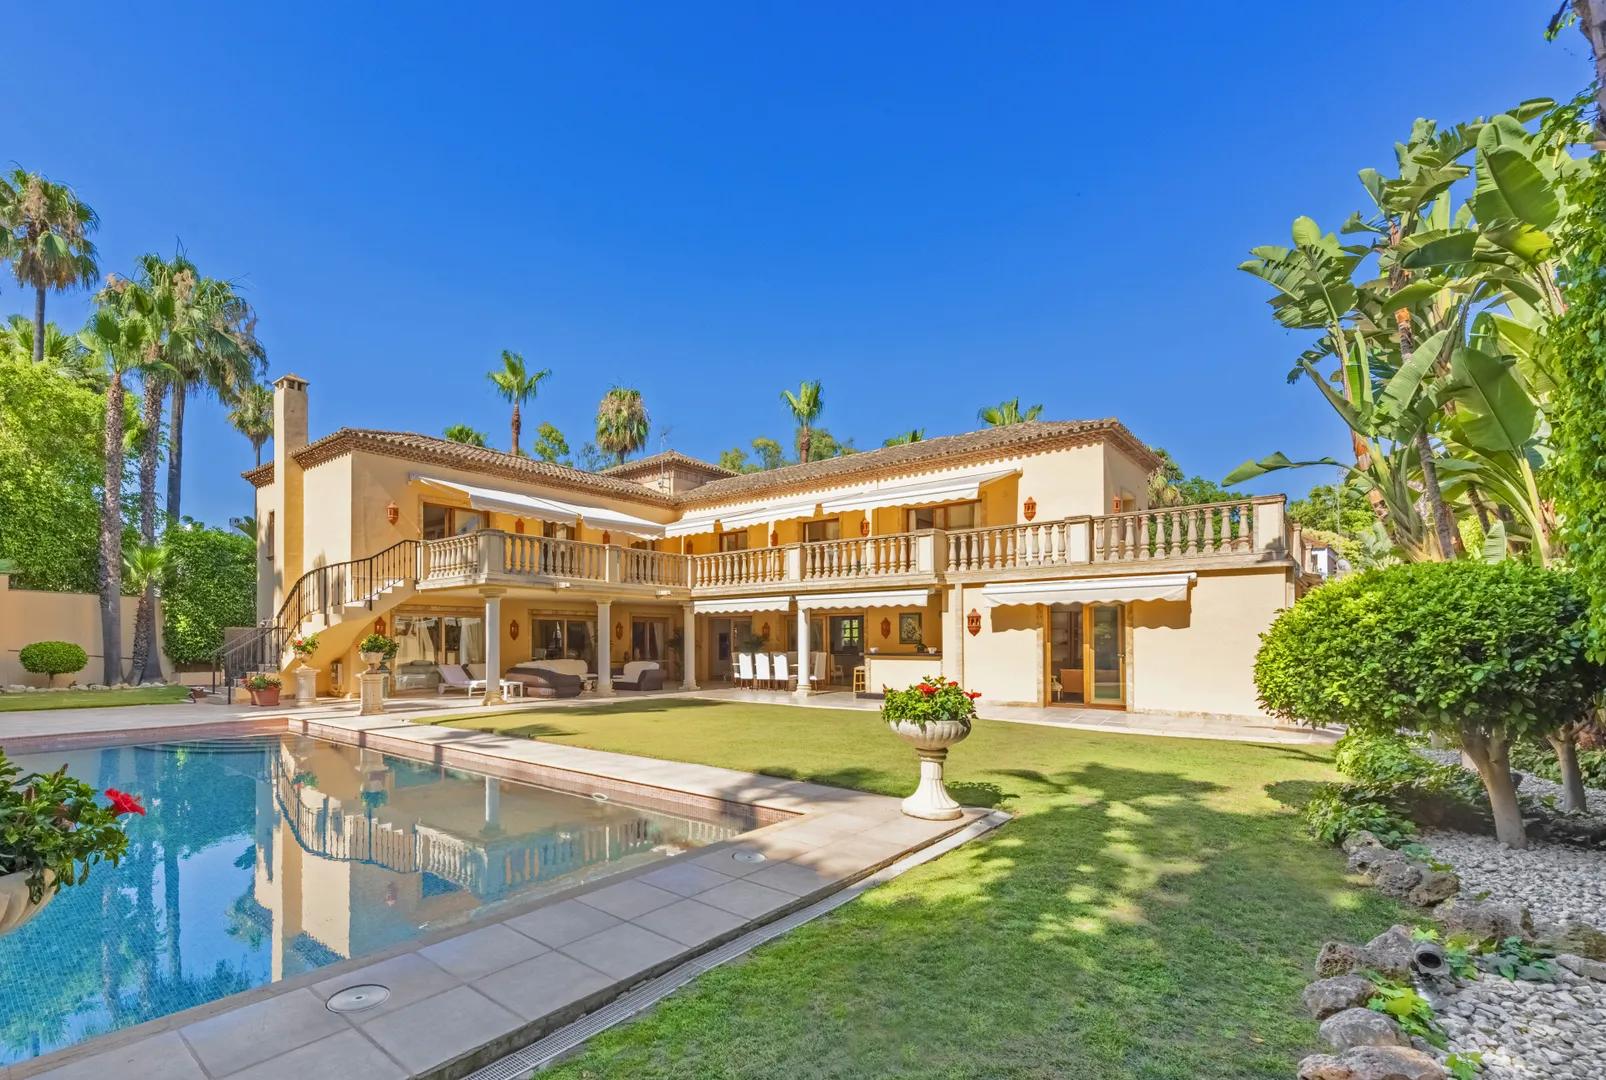 Casa clásica con jardín, piscina y cerca de campos de golf en Nueva Andalucía